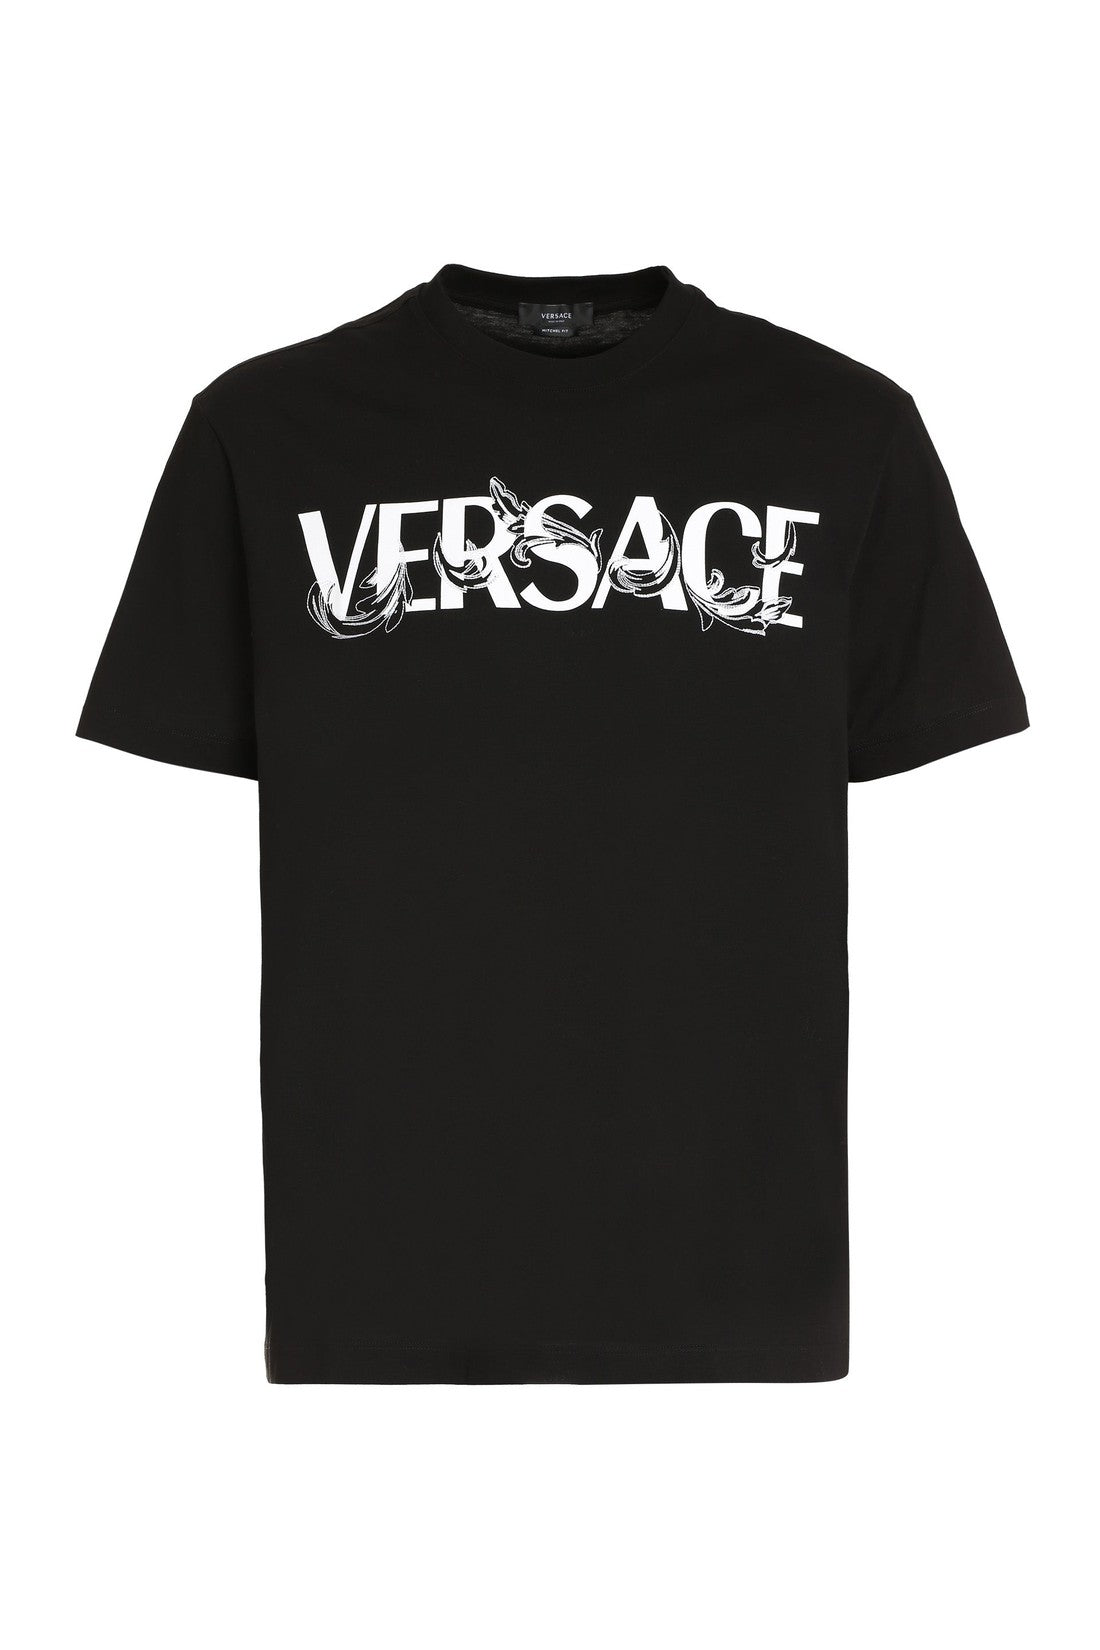 Versace-OUTLET-SALE-Logo printed cotton T-shirt-ARCHIVIST